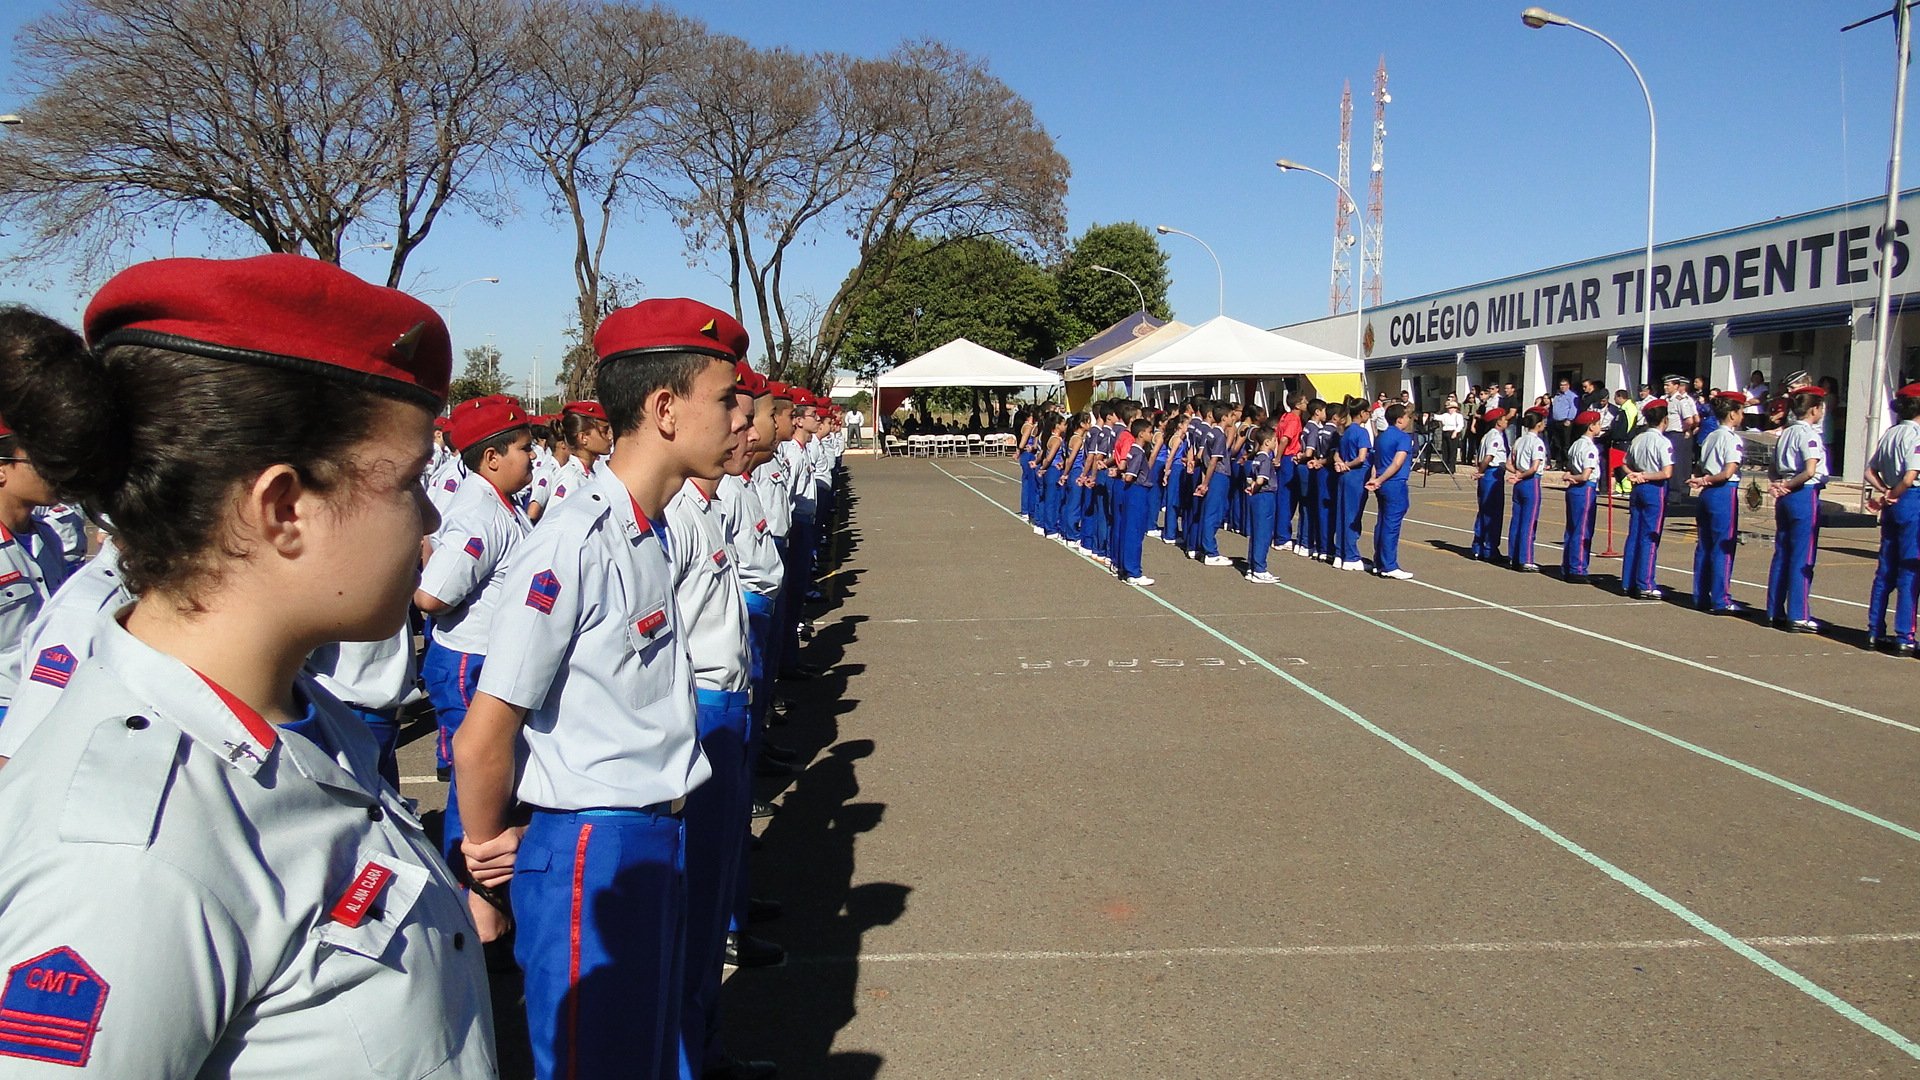 Fachada do Colégio Militar Tiradentes em Brasília